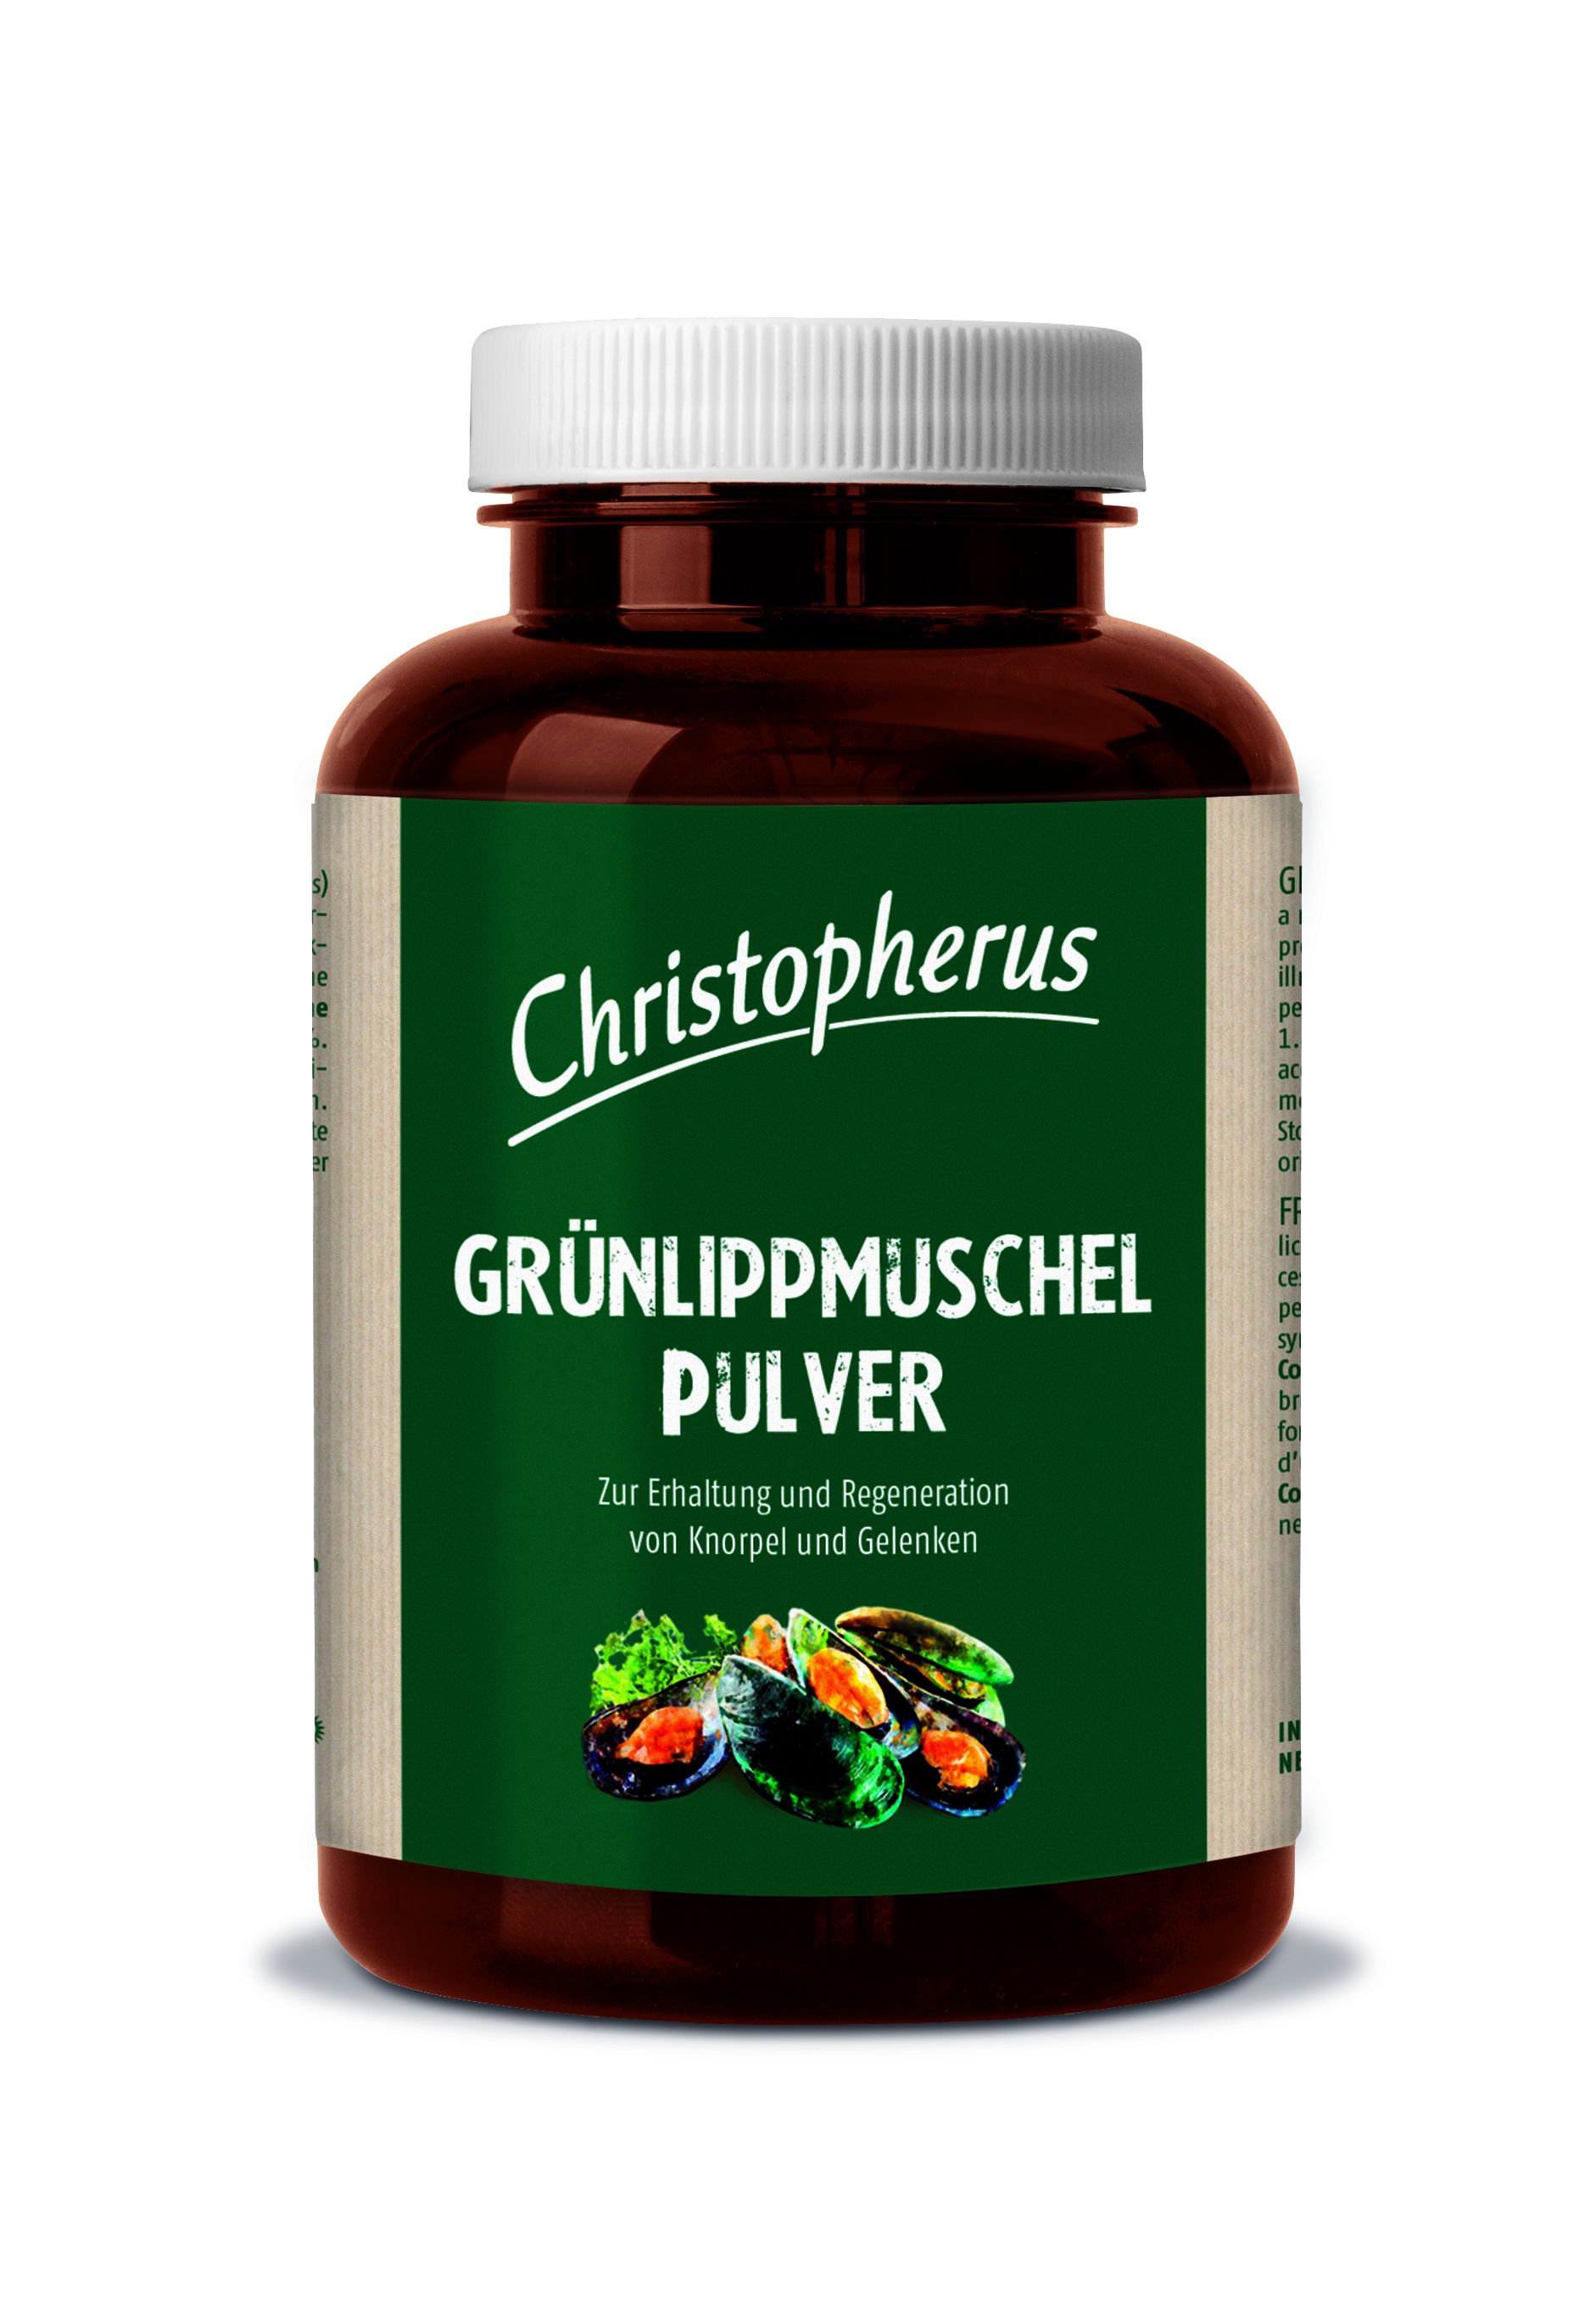 Christopherus – Grünlippmuschel Pulver